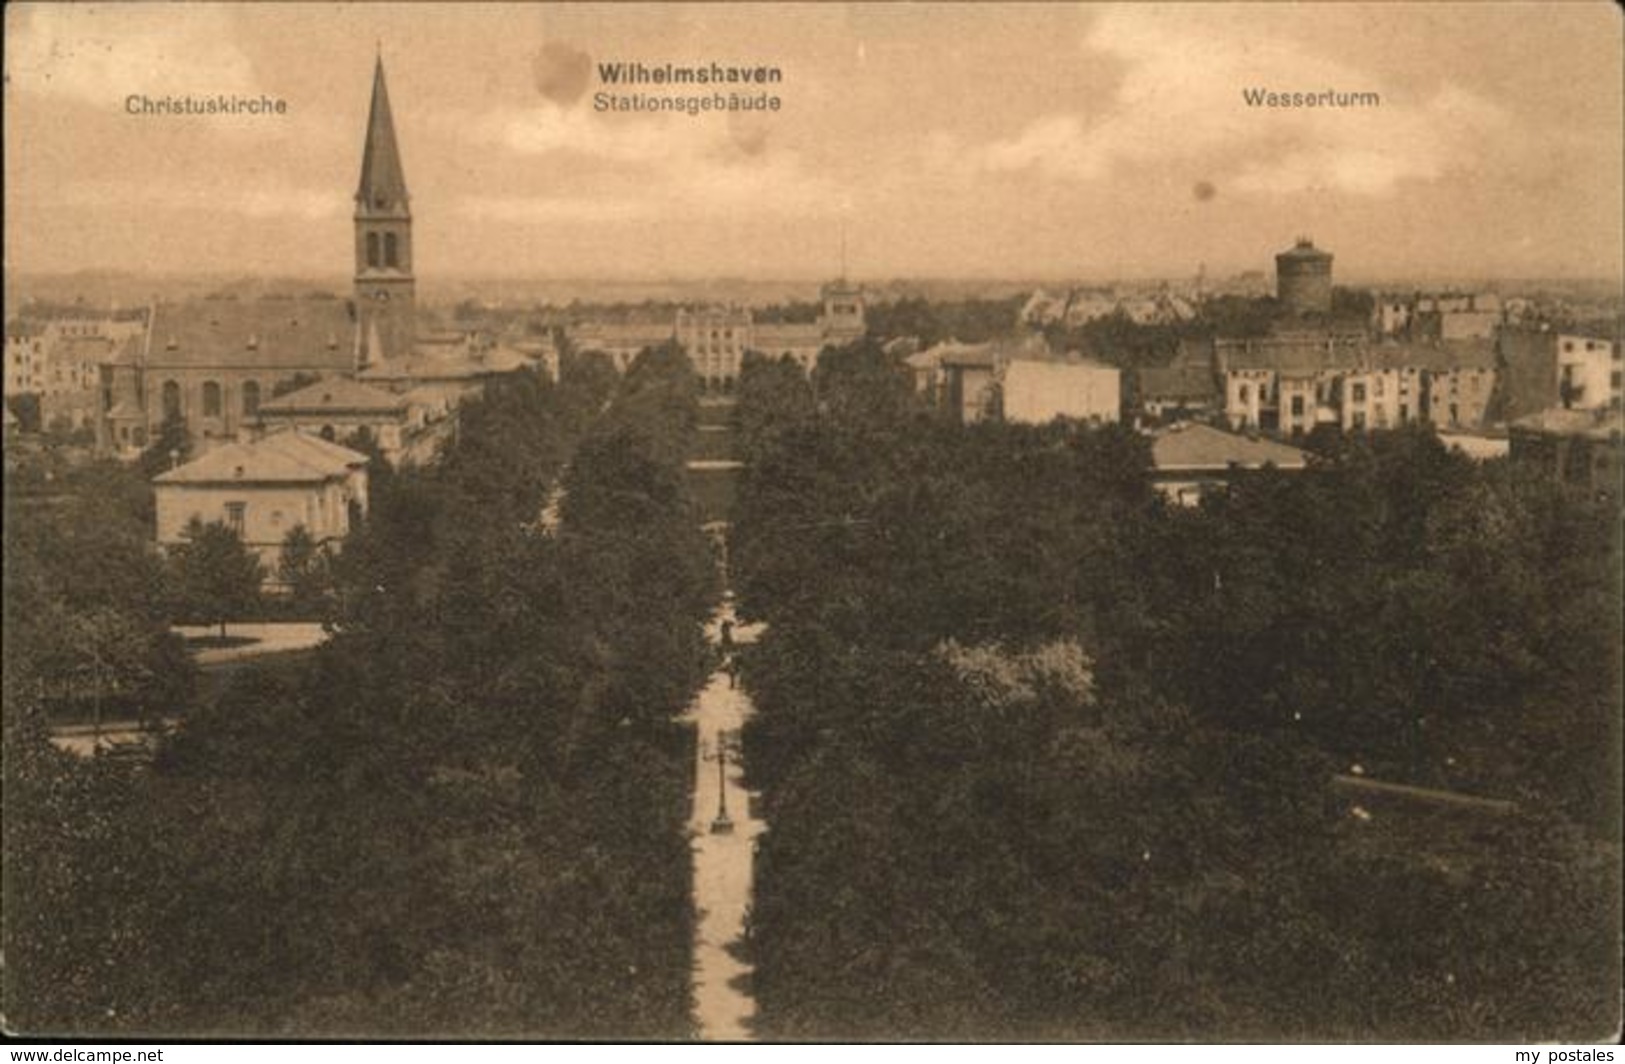 41222252 Wilhelmshaven Wasserturm, Stationsgebaeude, Christuskirche, Feldpost Al - Wilhelmshaven